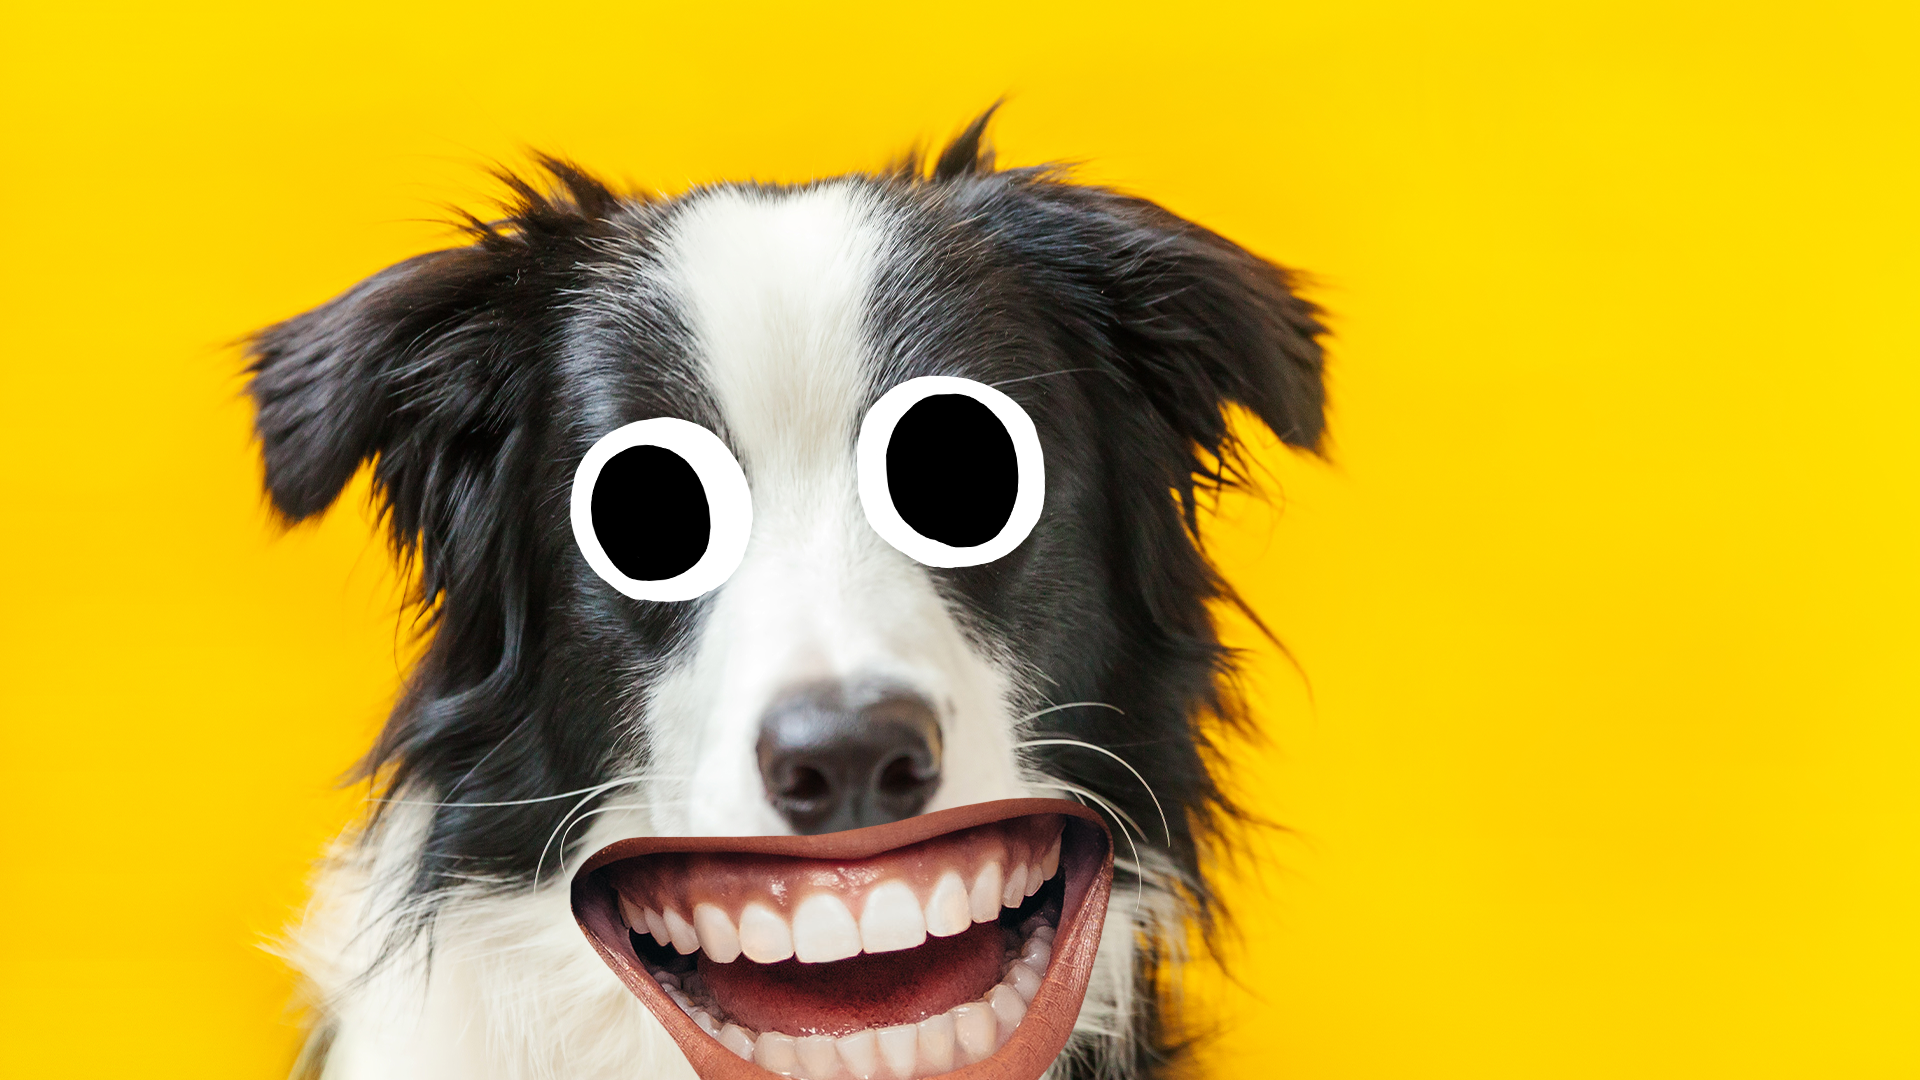 Smiling dog on yellow background